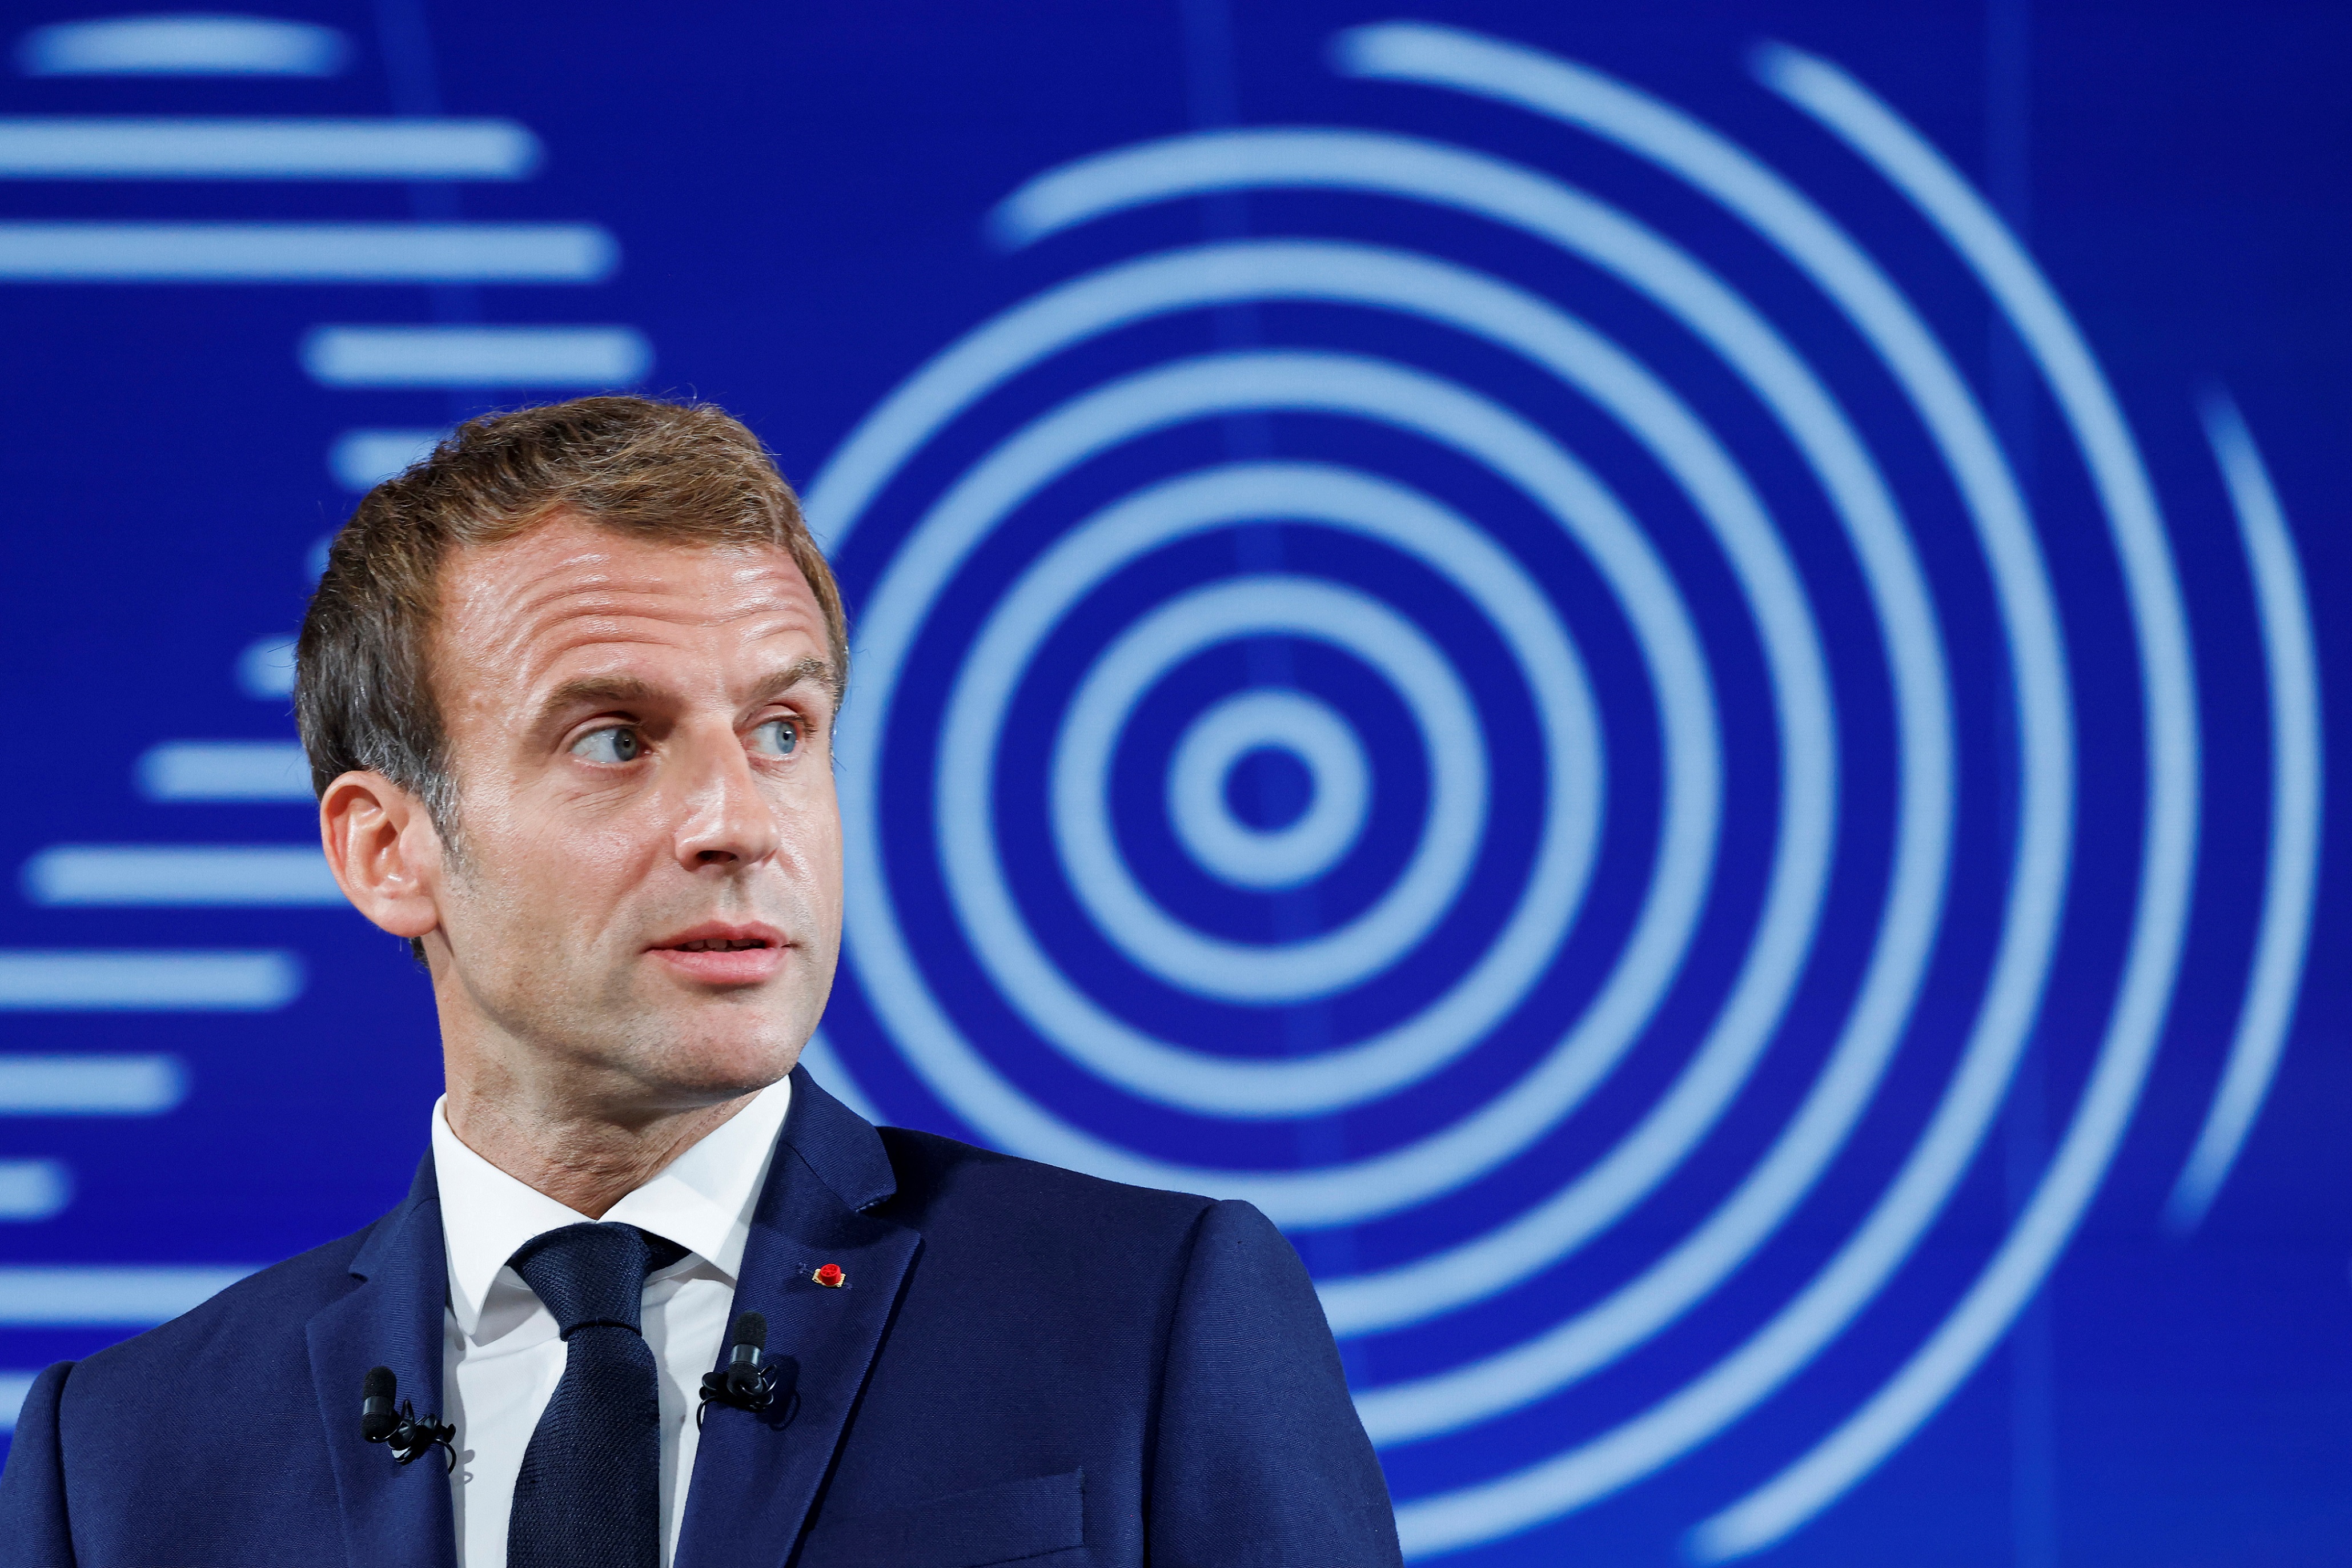 Un avion bas carbone en 2030 : Macron joue-t-il sur les mots ?